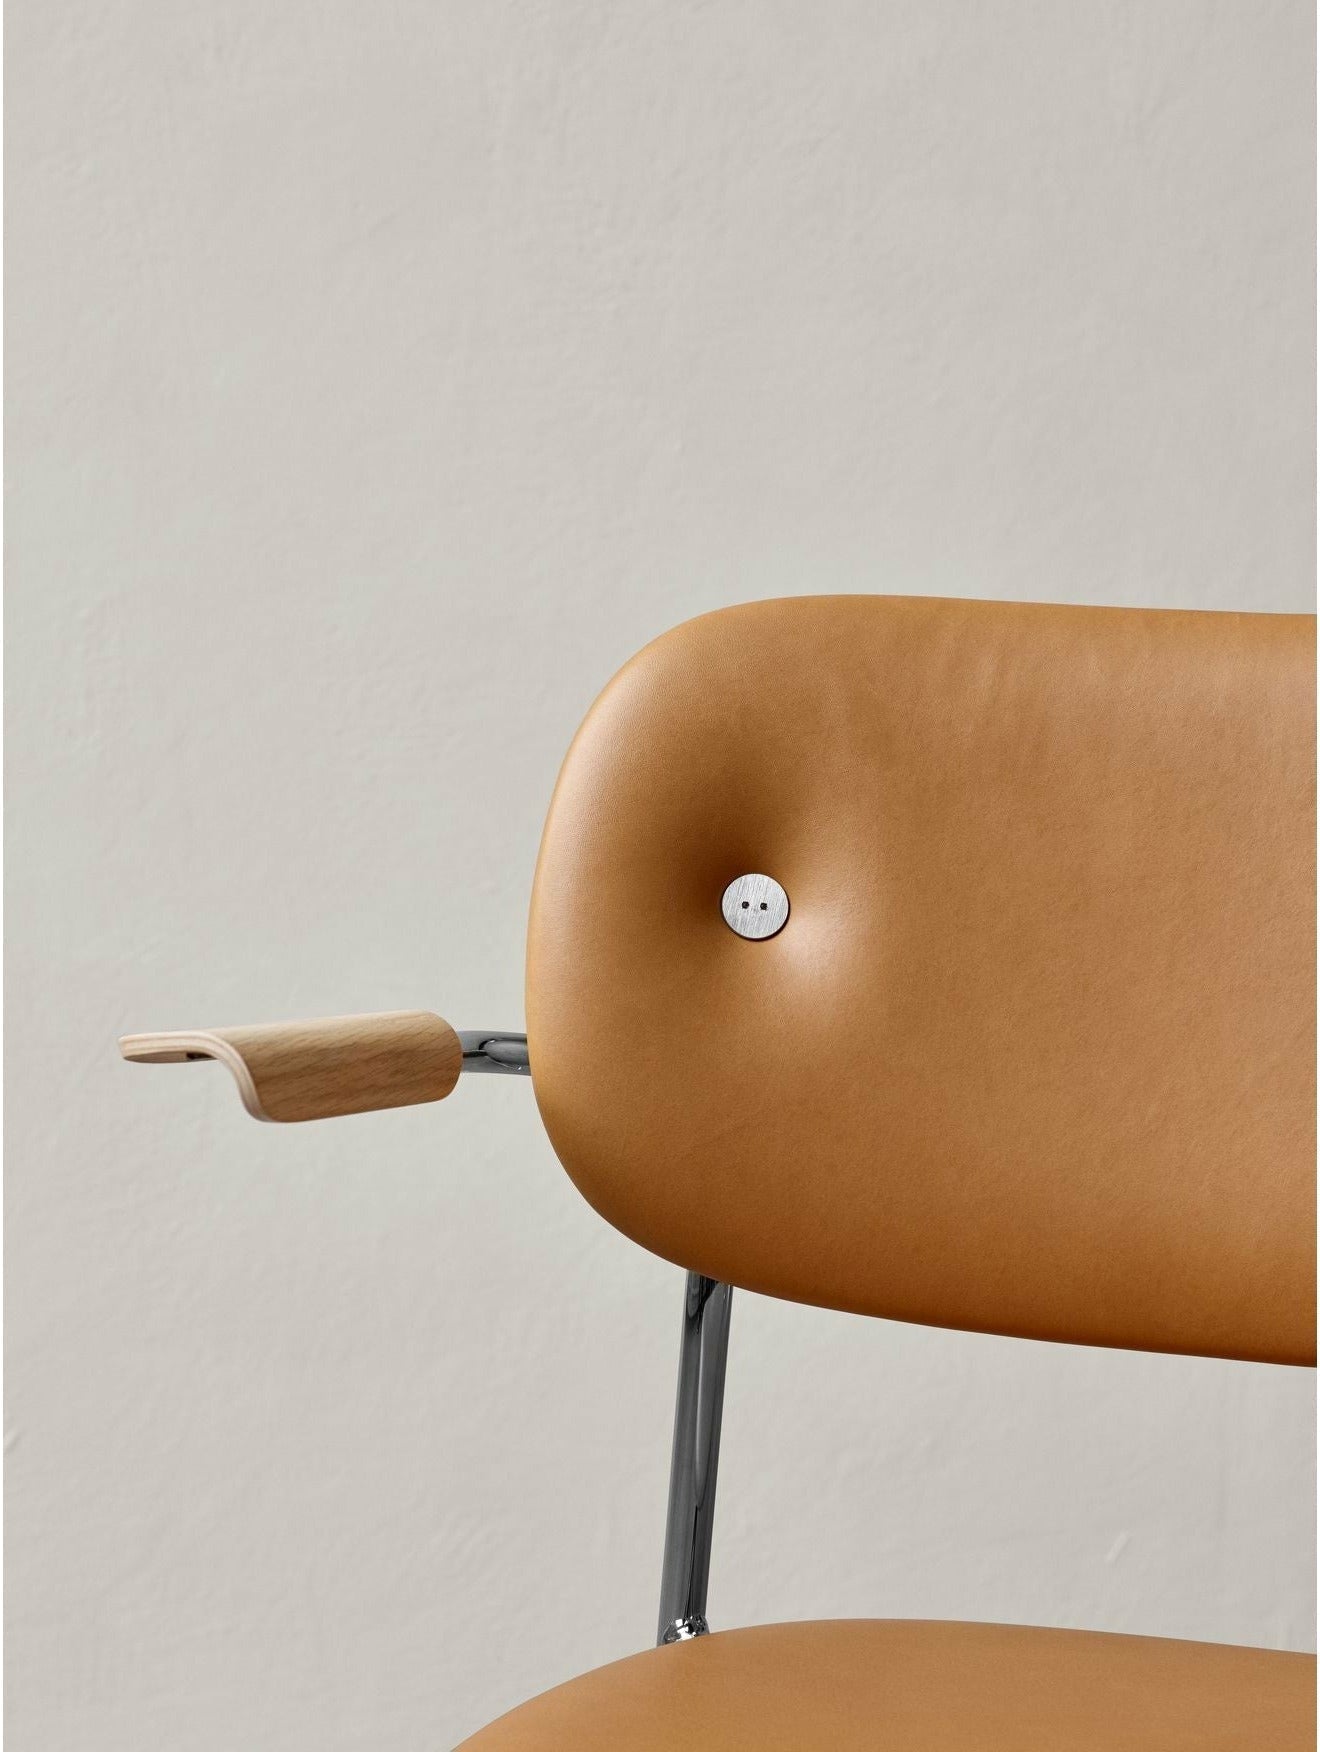 Audo Copenhagen Co silla tapicería completa con roble manchado oscuro del reposabrazos, Chrome/Dakar 0842